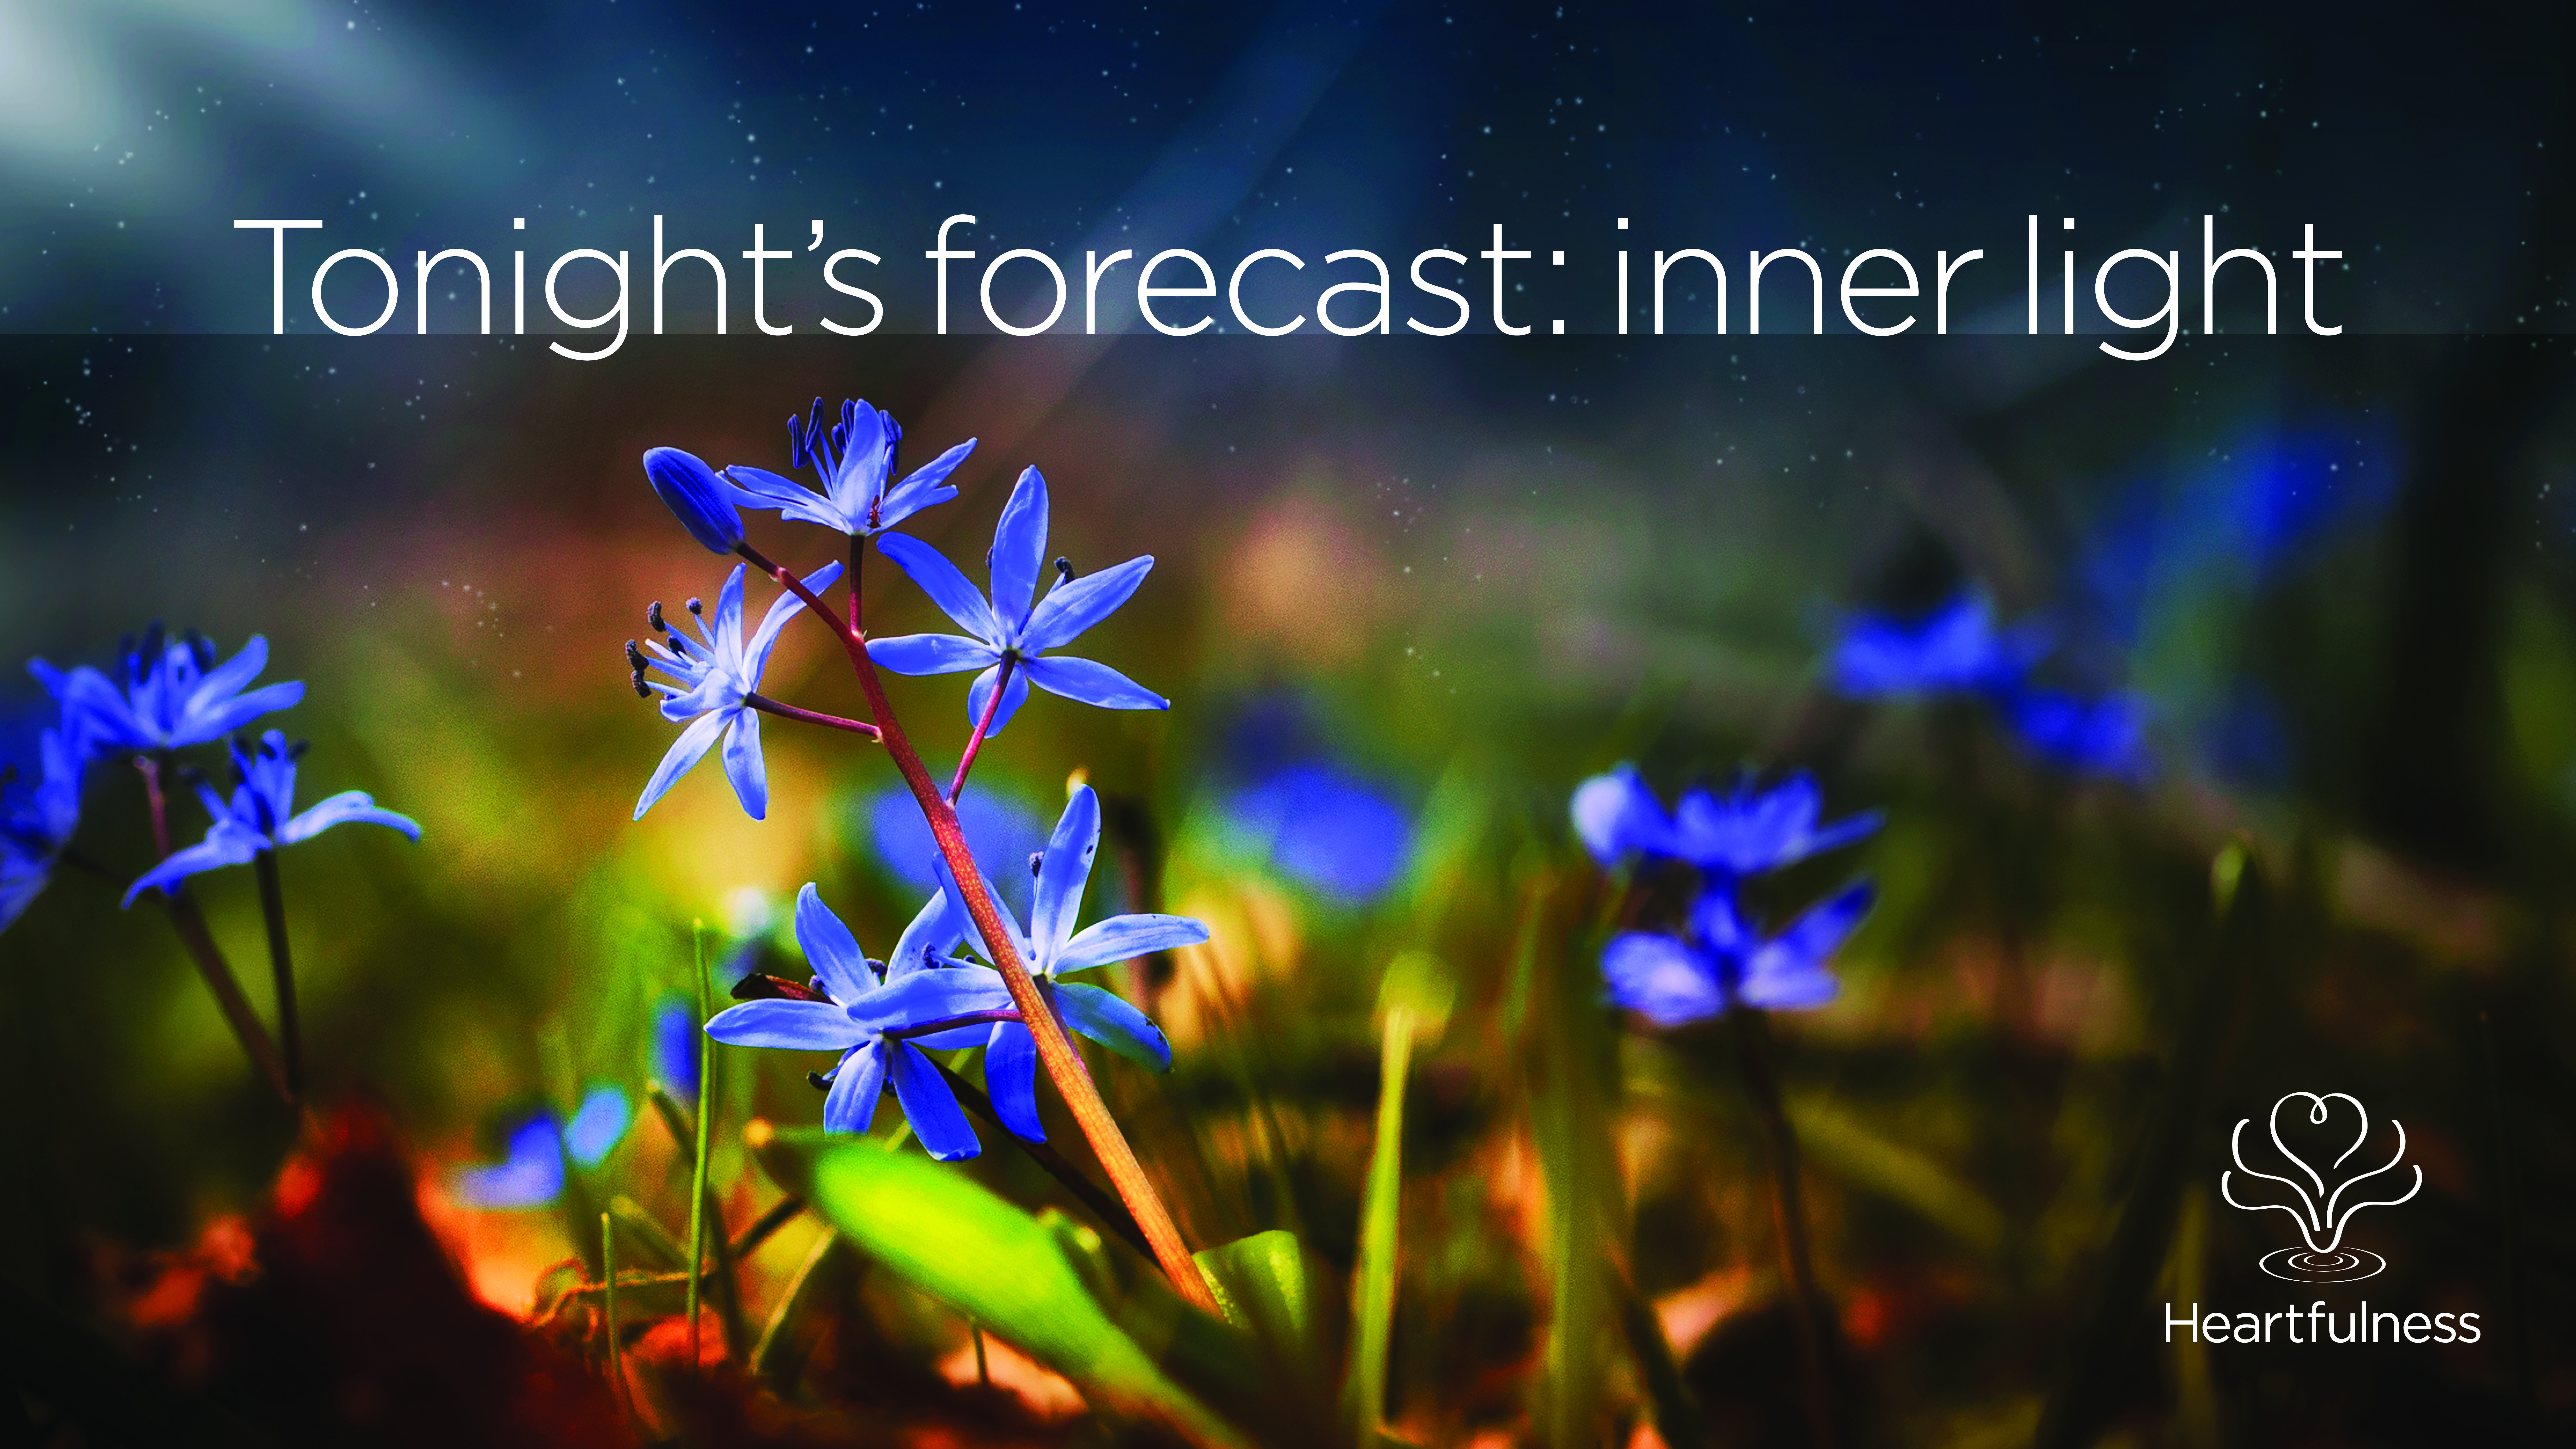 Heartfulness Tonight's forecast: inner light